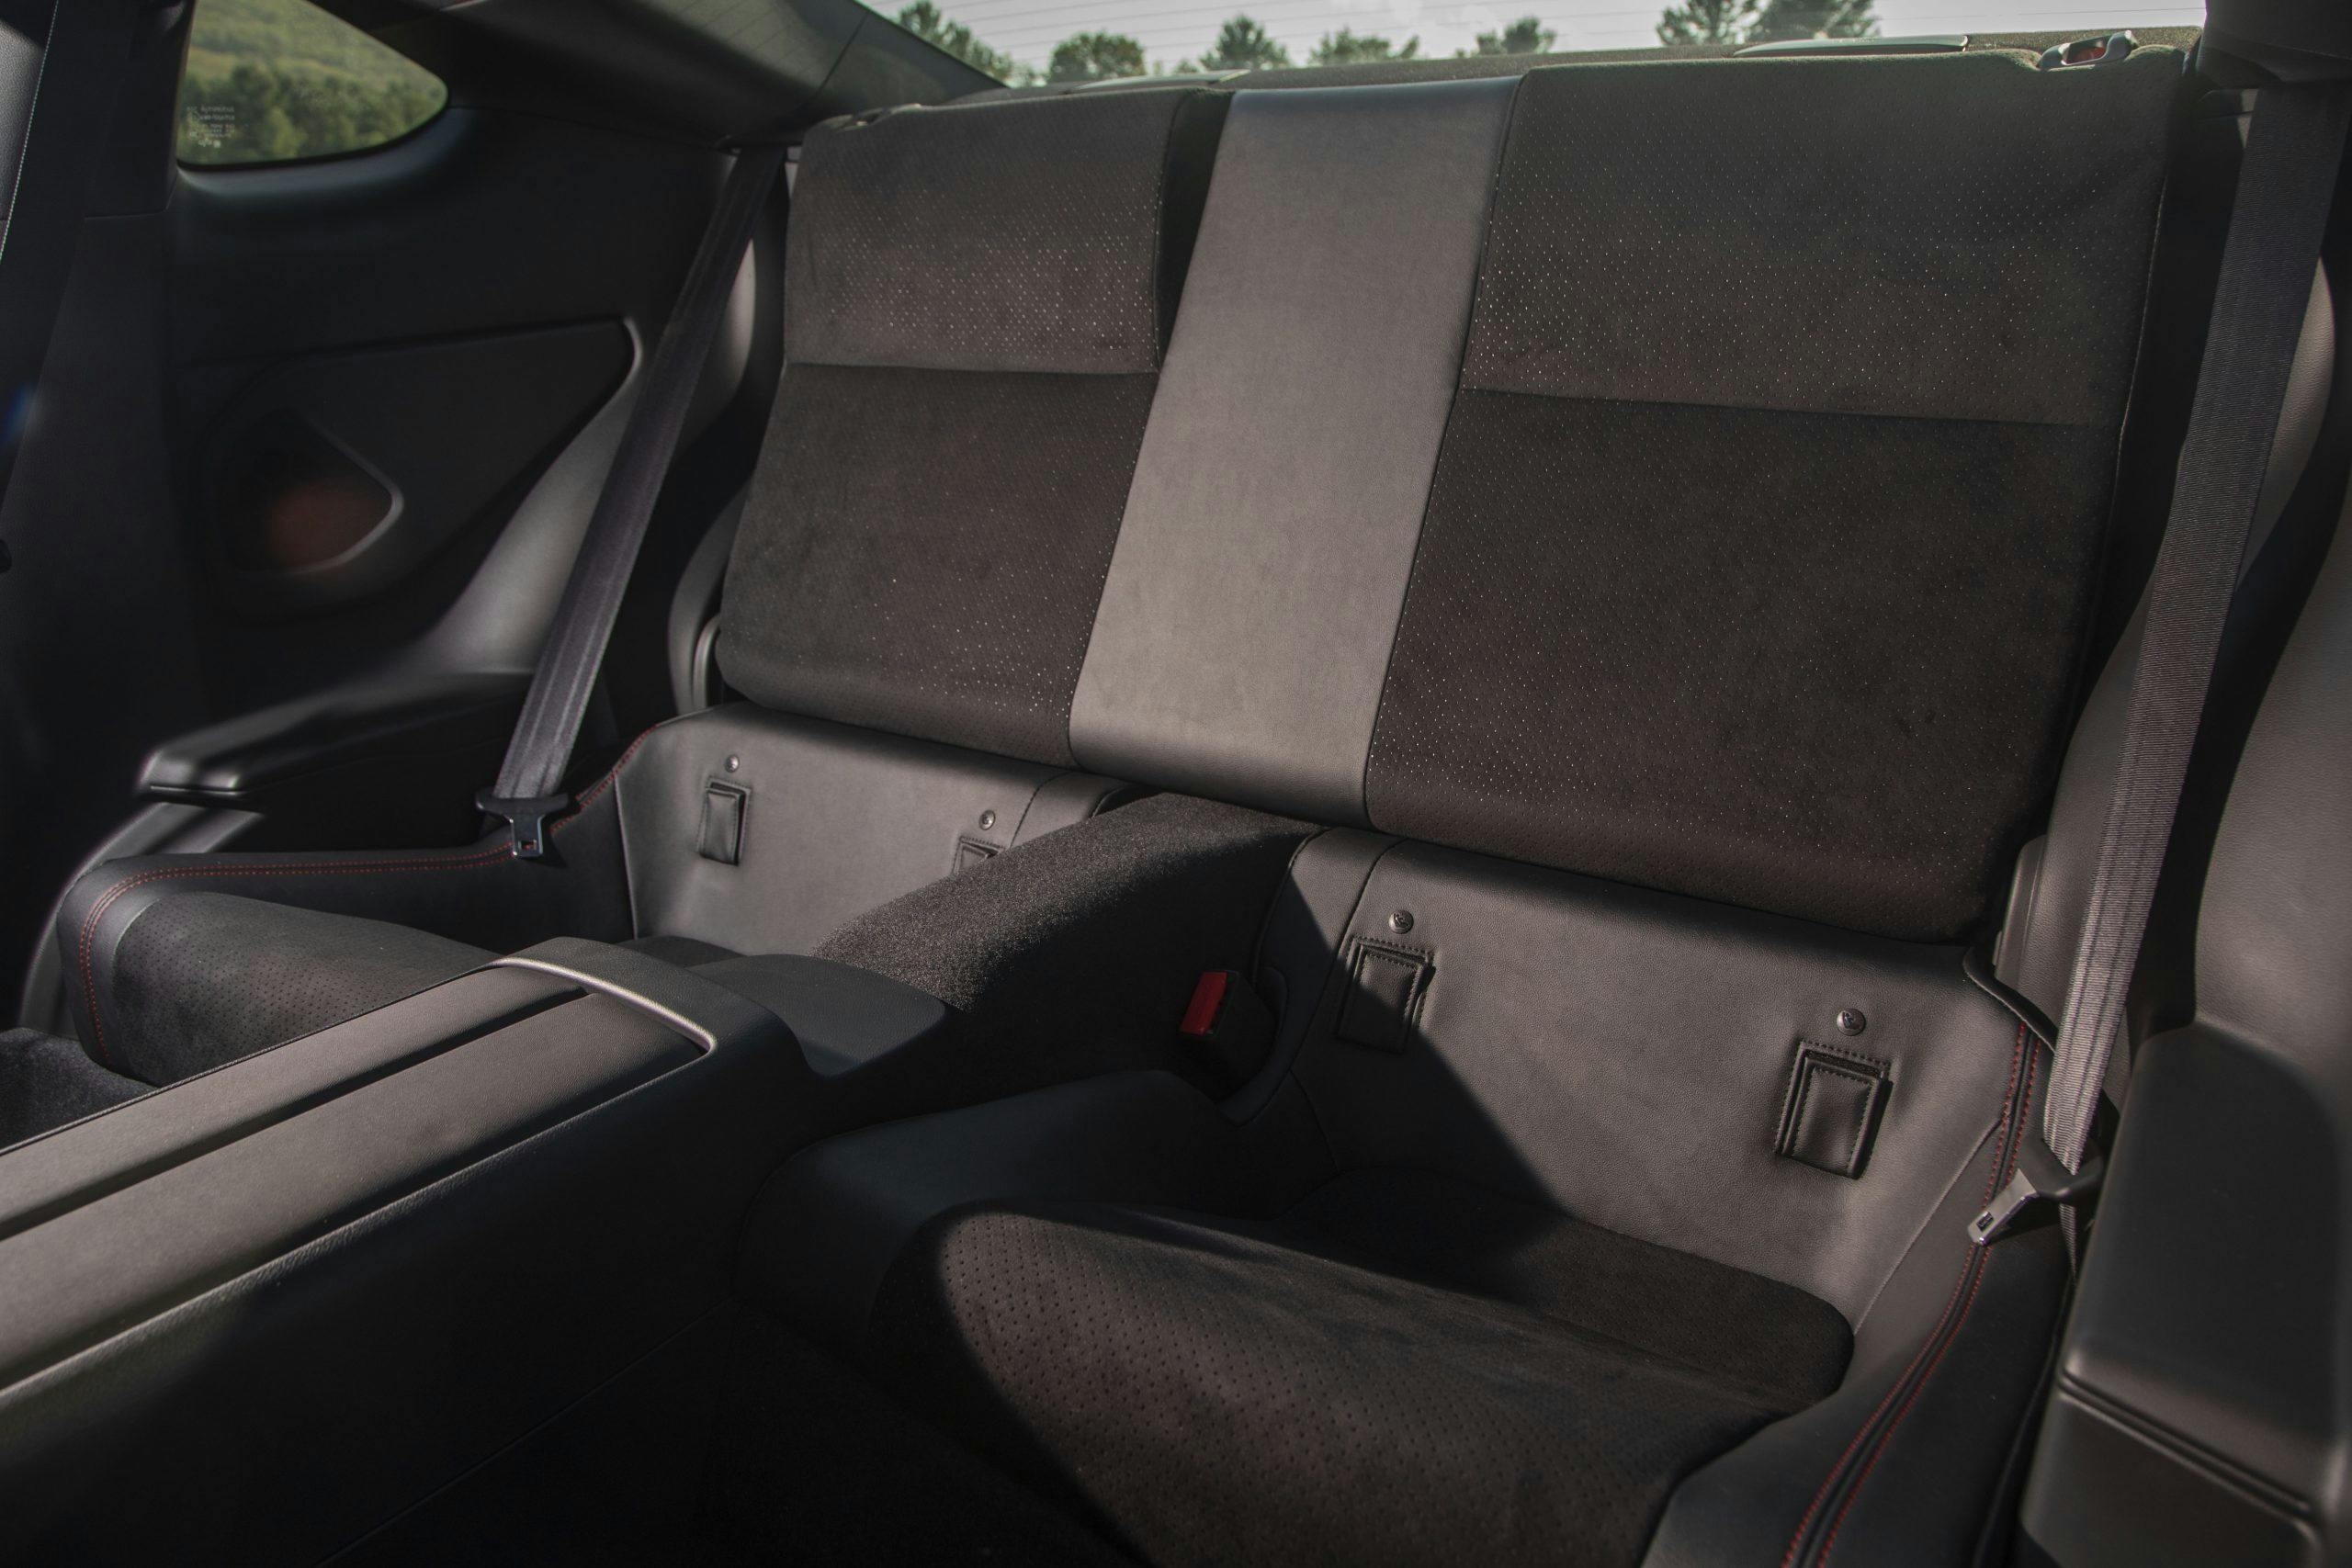 2022 Subaru BRZ interior rear seats